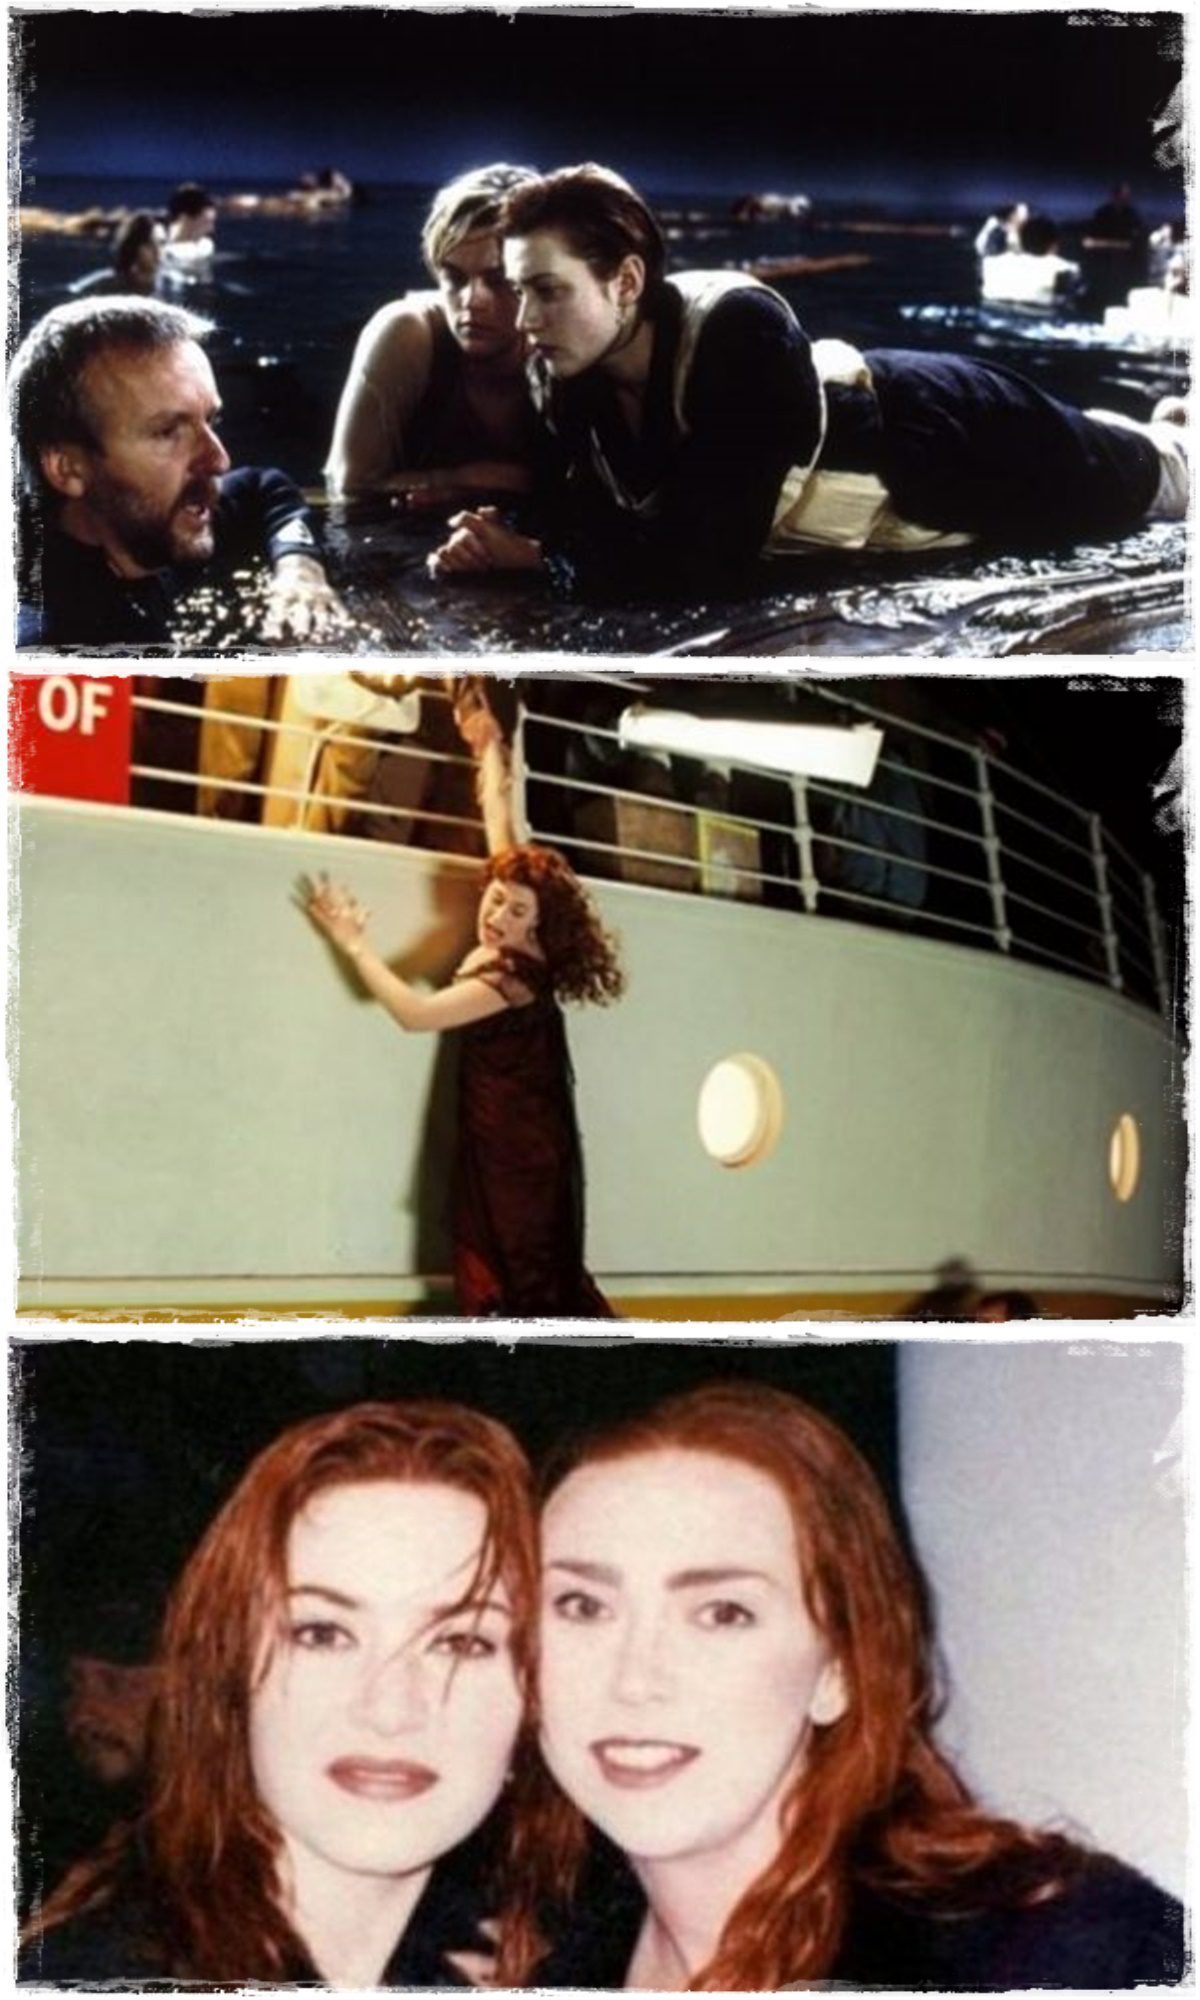 A drámai végkifejlet ellenére a Titanic forgatása jó buli volt a kulisszák mögötti fényképek alapján